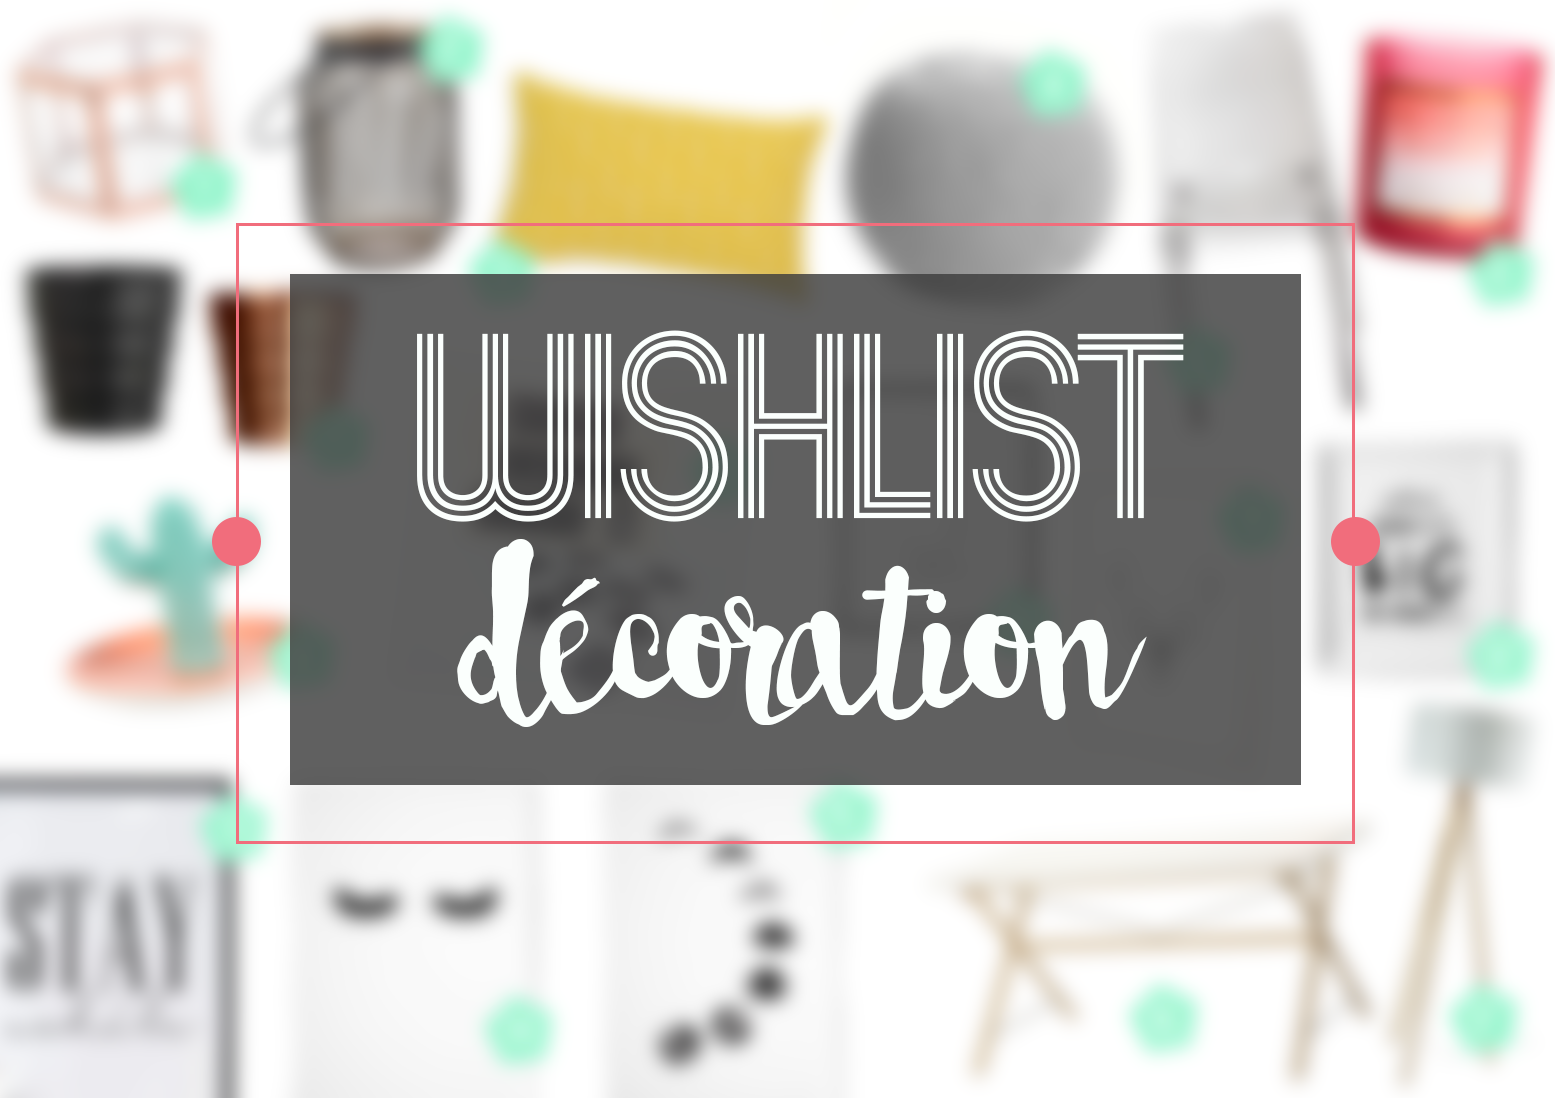 Wishlist décoration #2 